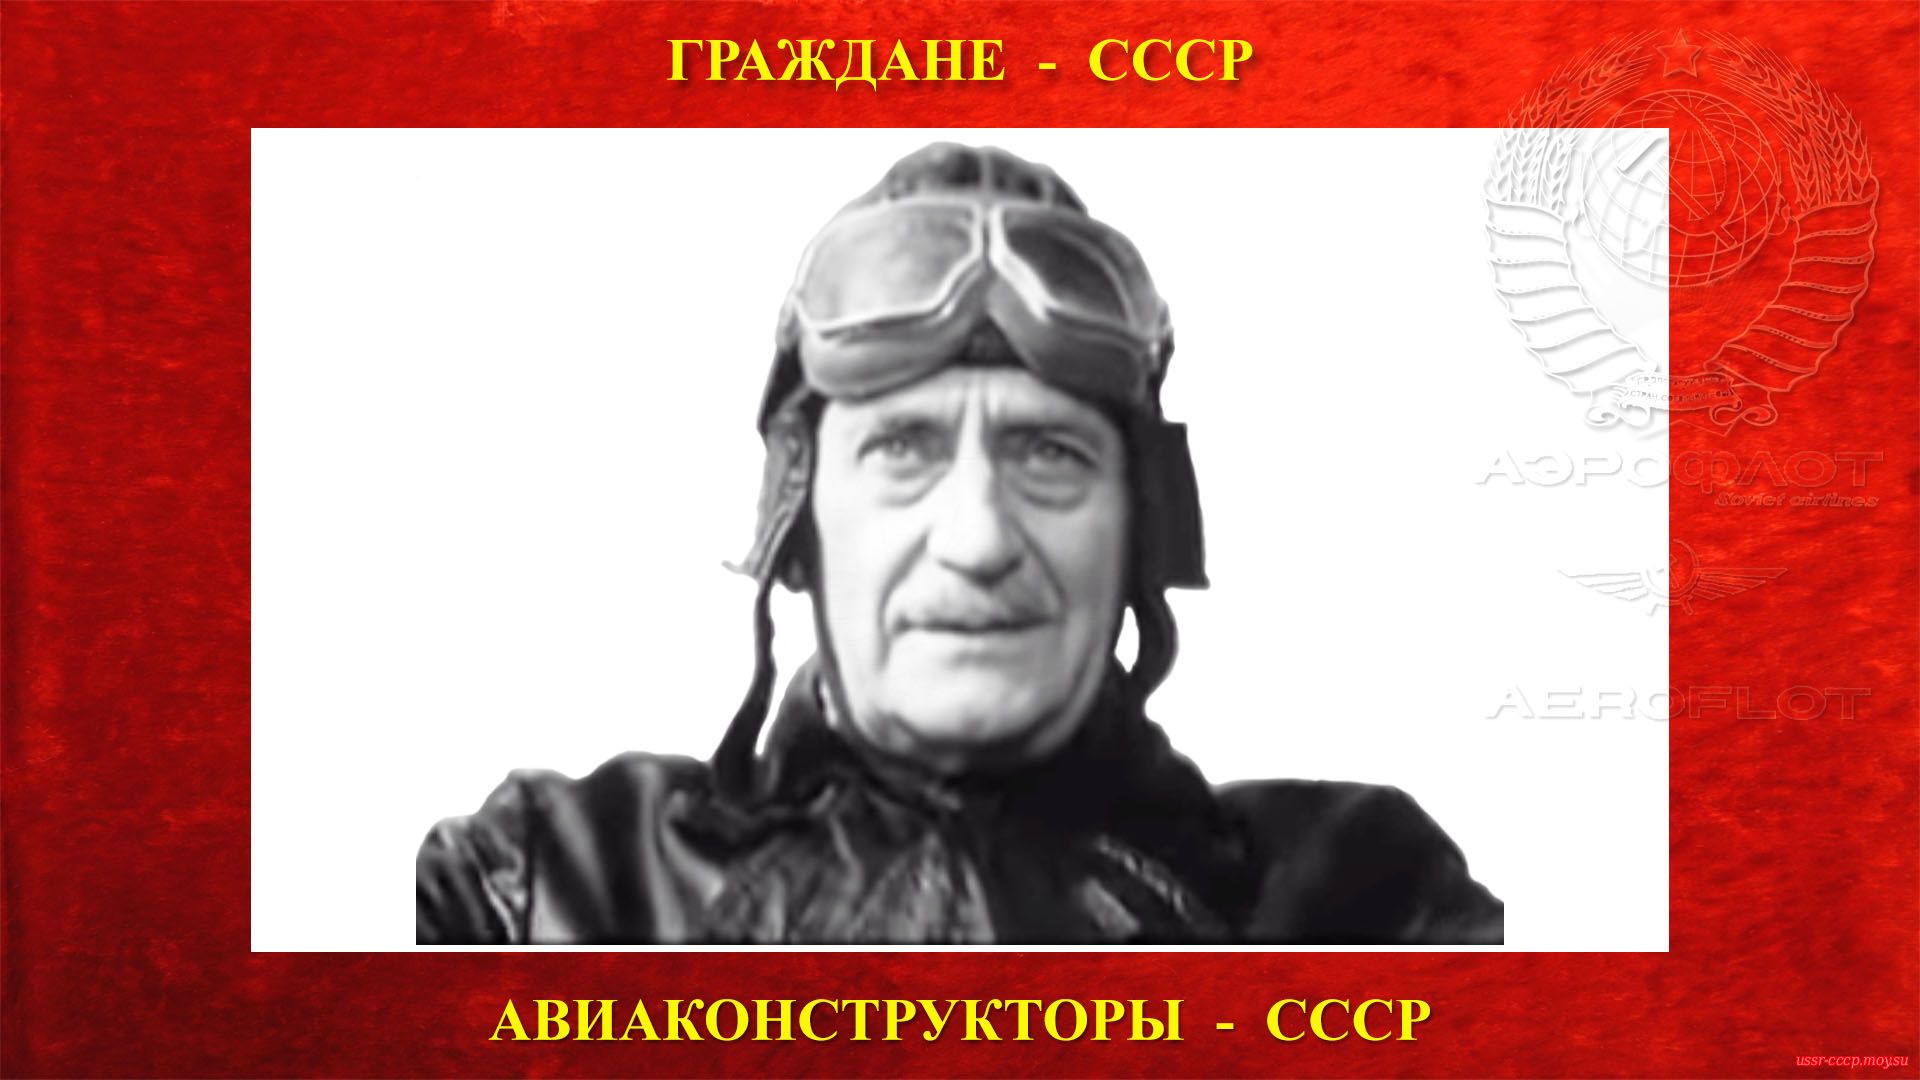 Шавров Вадим Борисович в 1968 году сыграл эпизодическую роль пожилого лётчика Красной Армии в фильме «Служили два товарища» (Начало фрагмента с (19:55 по 25:55)